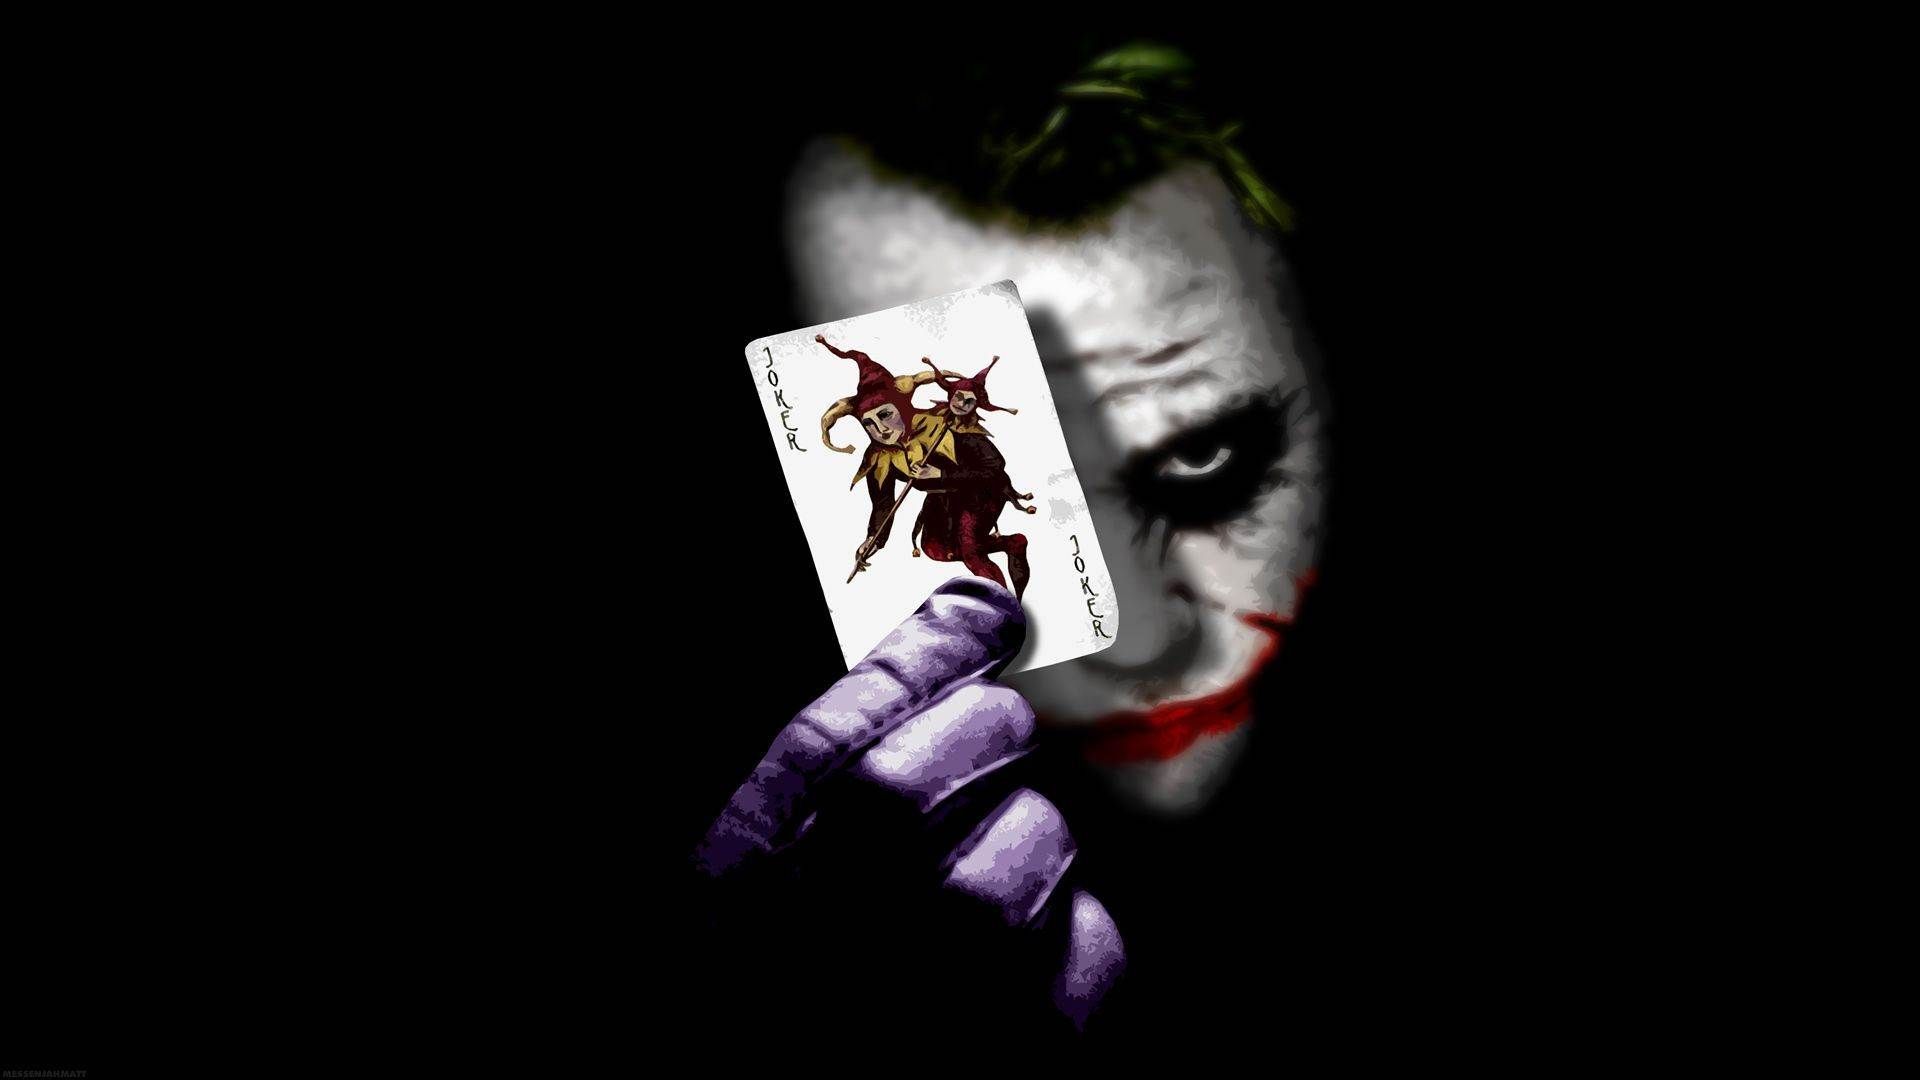 The Joker Wallpaper Free The Joker Background